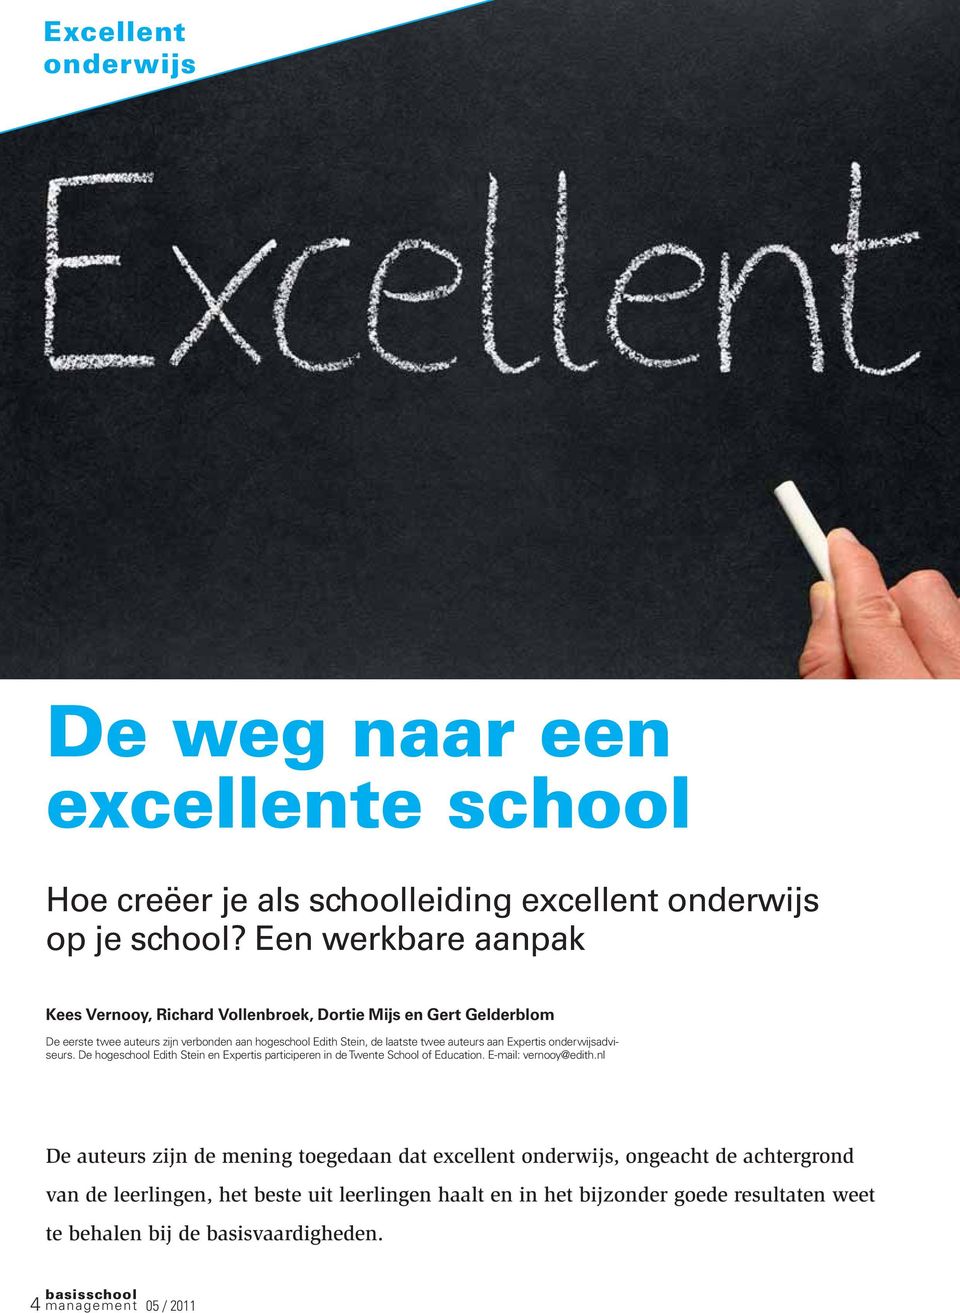 auteurs aan Expertis onderwijsadviseurs. De hogeschool Edith Stein en Expertis participeren in de Twente School of Education. E-mail: vernooy@edith.